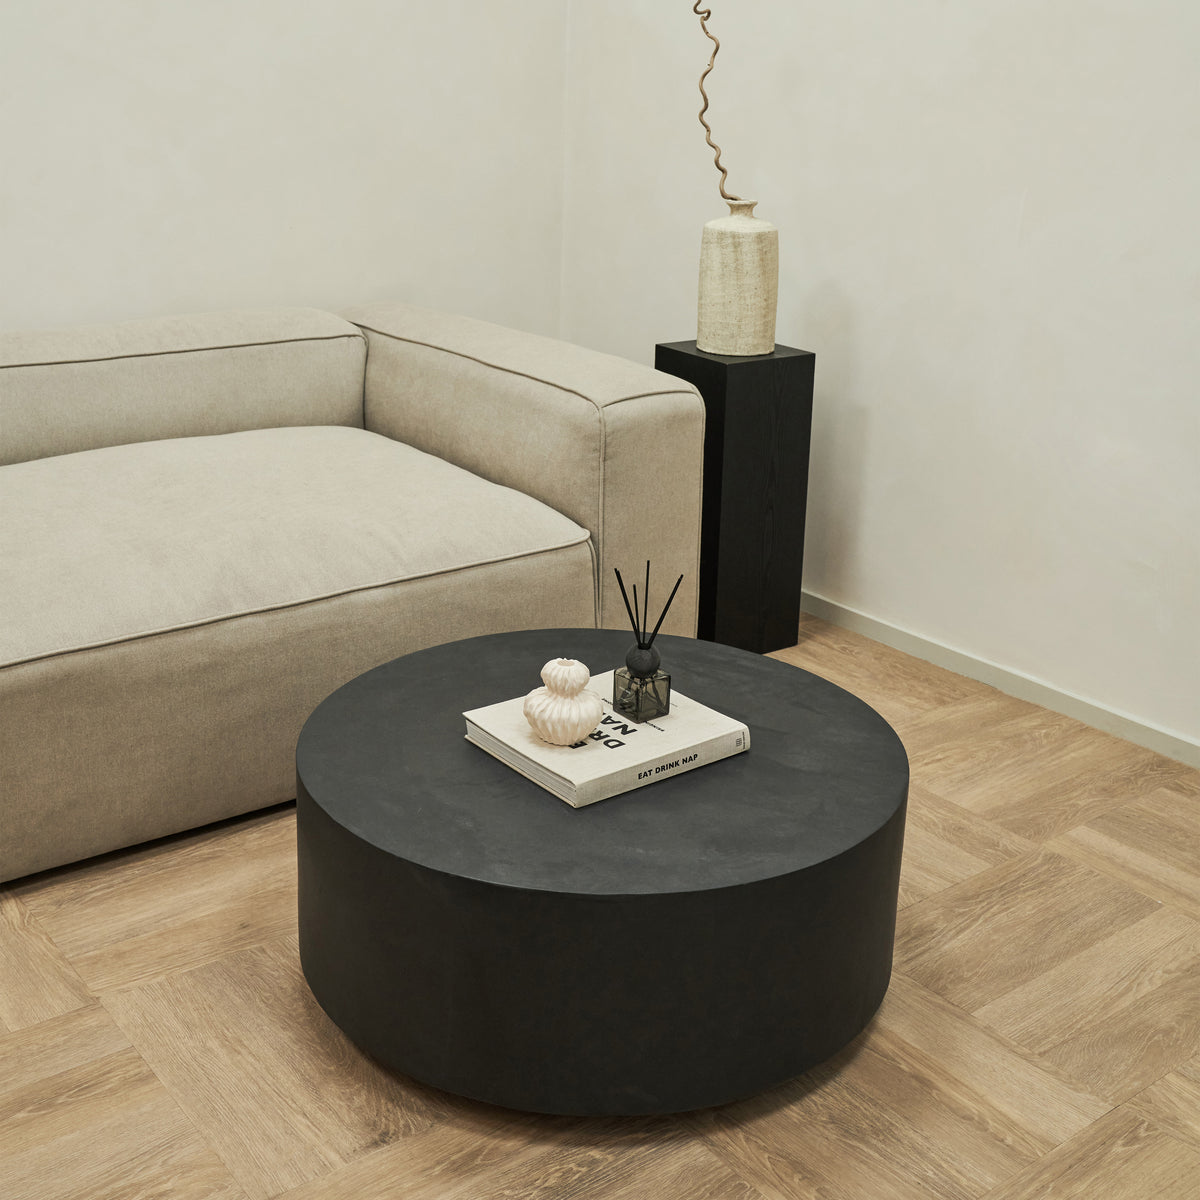 Large minimalist round black coffee table beside sofa